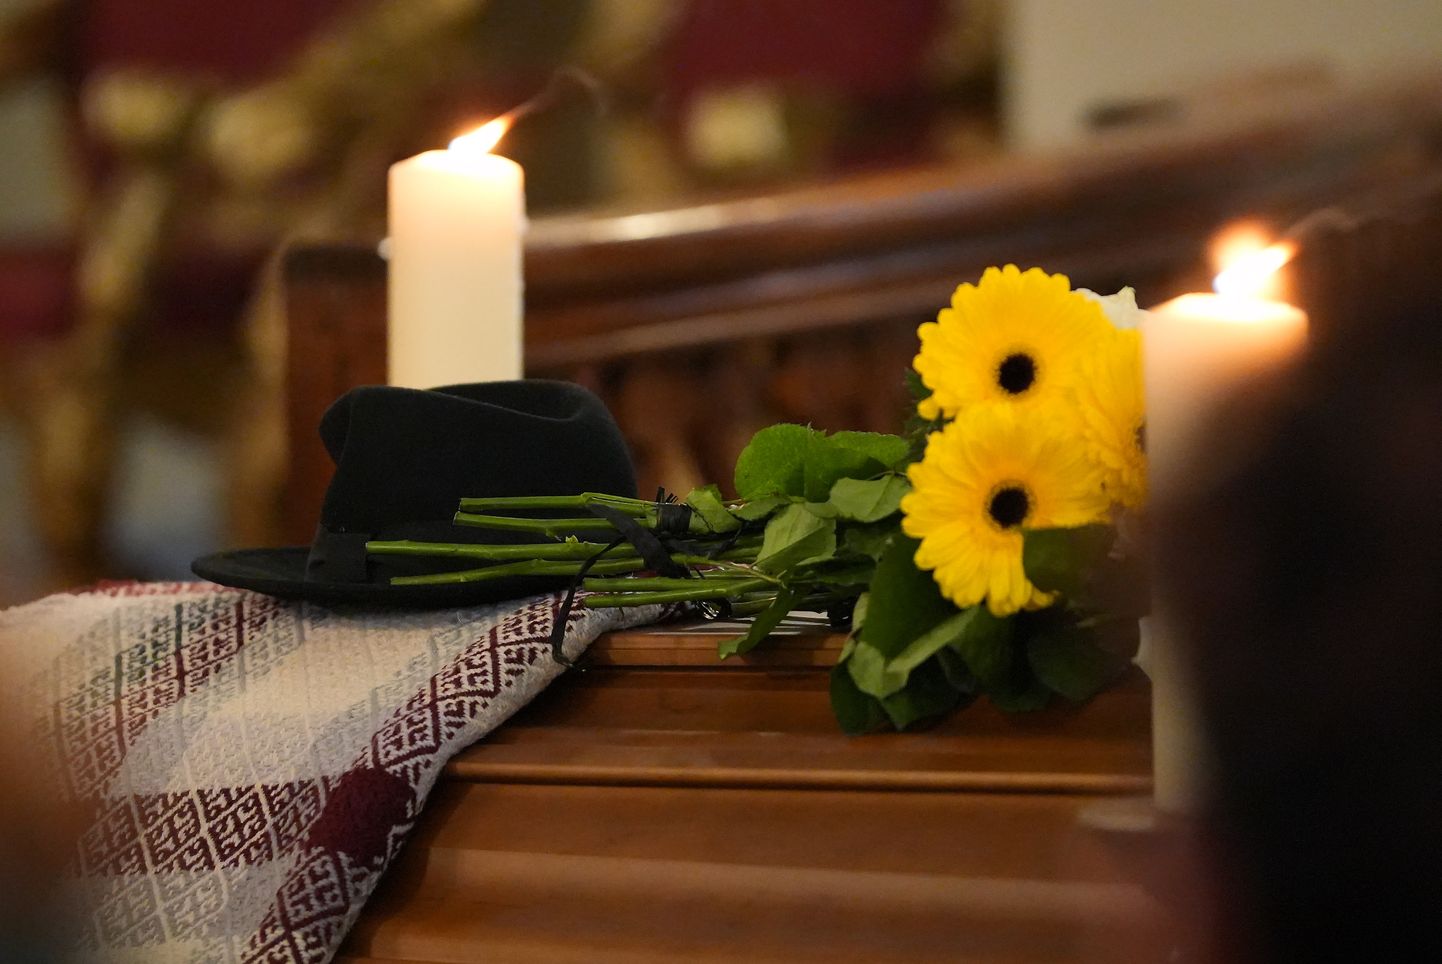 Sestdien, 17. februārī Rīgas Svētās Marijas Magdalēnas baznīcā notika atvadīšanās no mūžībā aizgājuša komponista un grupas "Pērkons" dibinātāja Jura Kulakova.